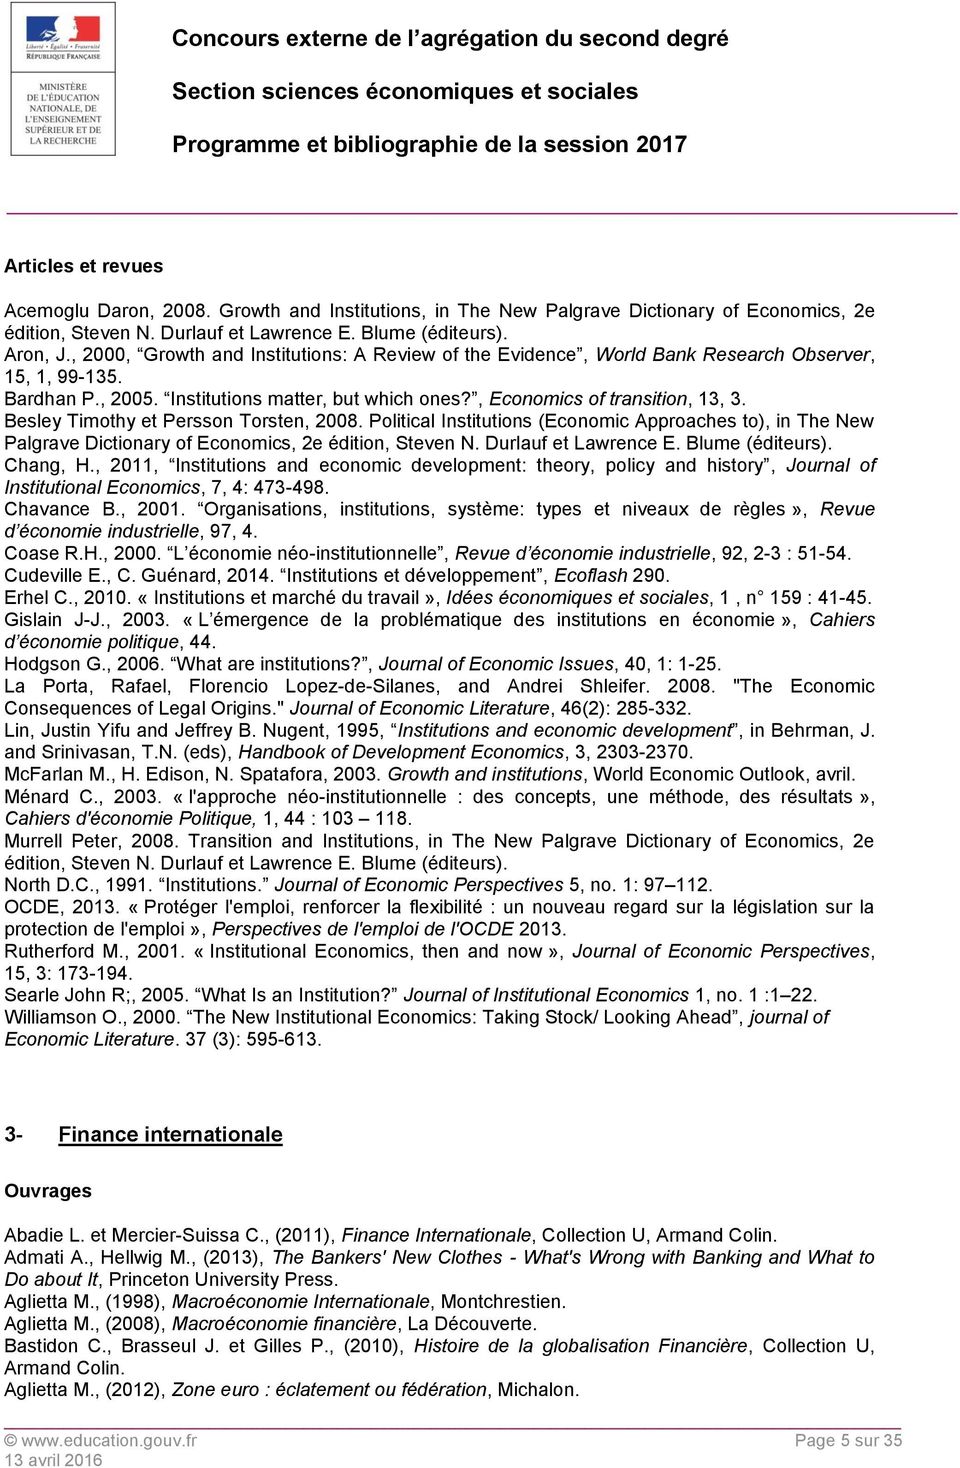 Besley Timothy et Persson Torsten, 2008. Political Institutions (Economic Approaches to), in The New Palgrave Dictionary of Economics, 2e édition, Steven N. Durlauf et Lawrence E. Blume (éditeurs).